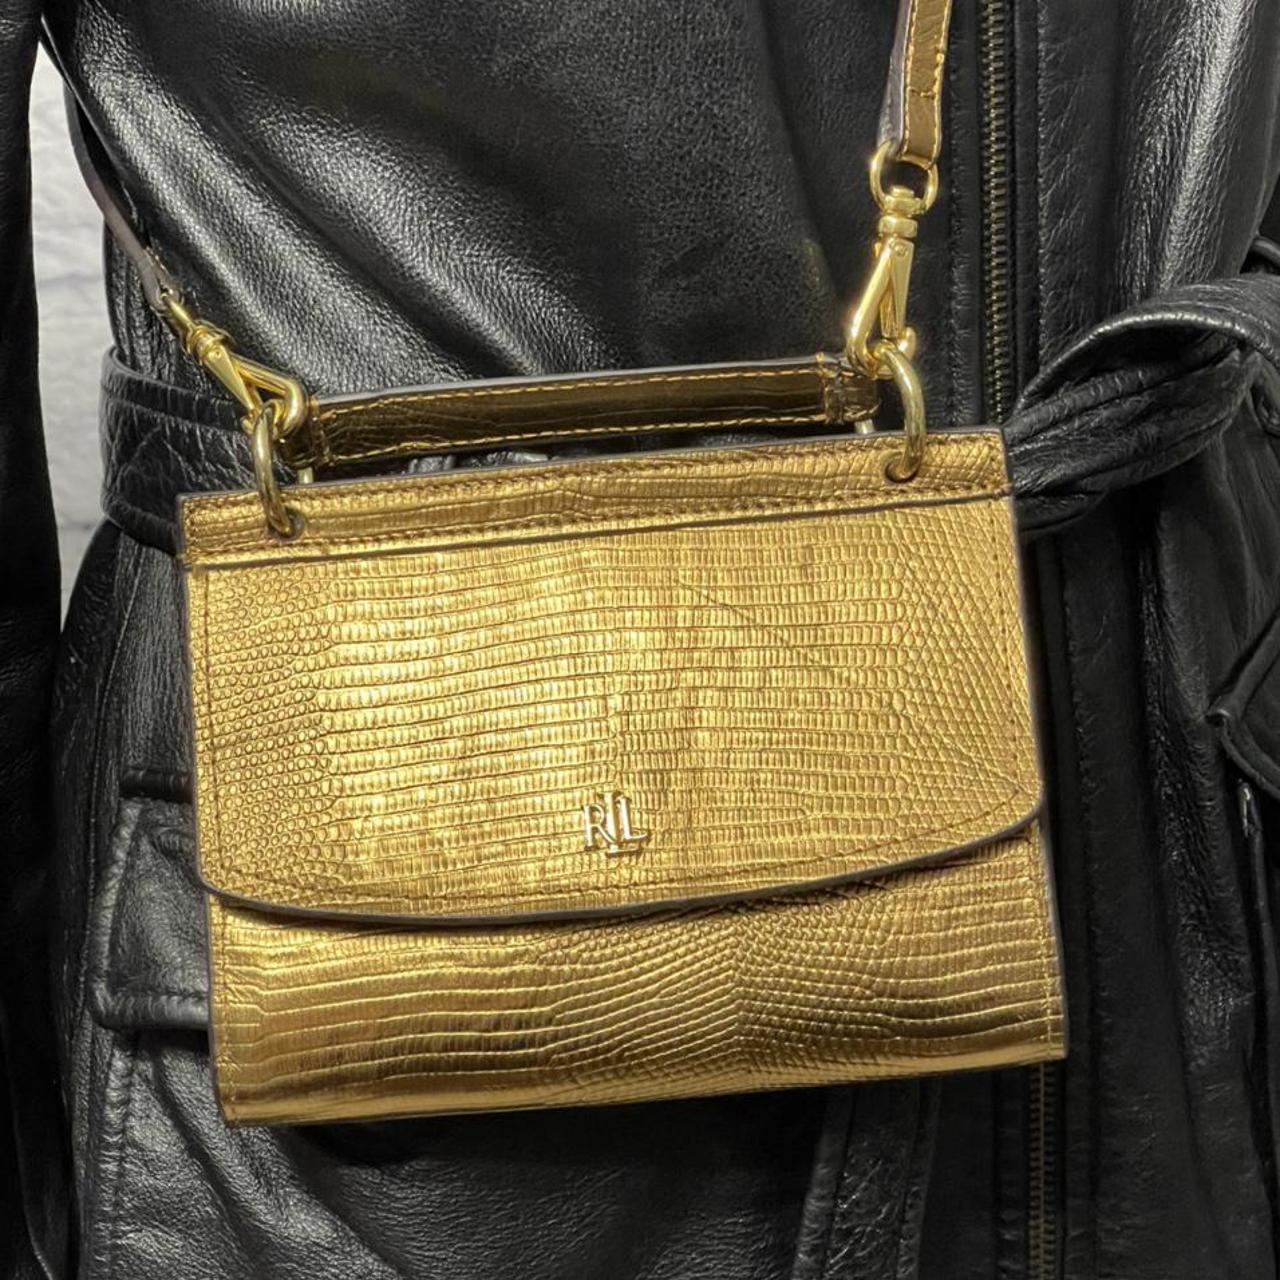 Ralph Lauren Women's Gold and Black Bag (2)